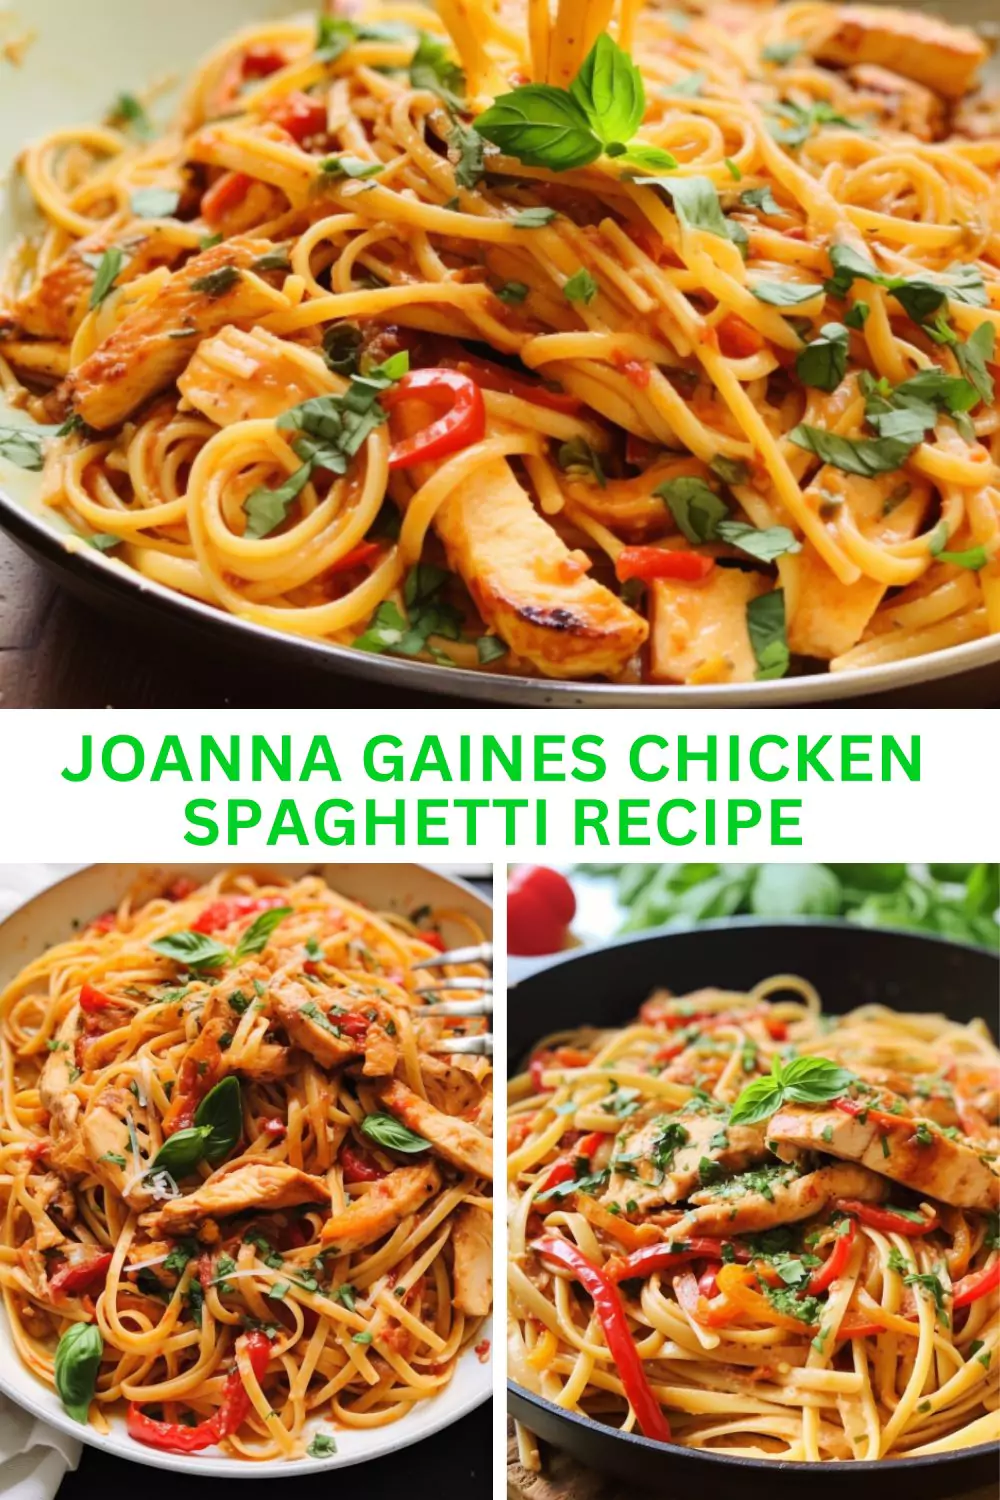 Joanna Gaines Chicken Spaghetti Recipe